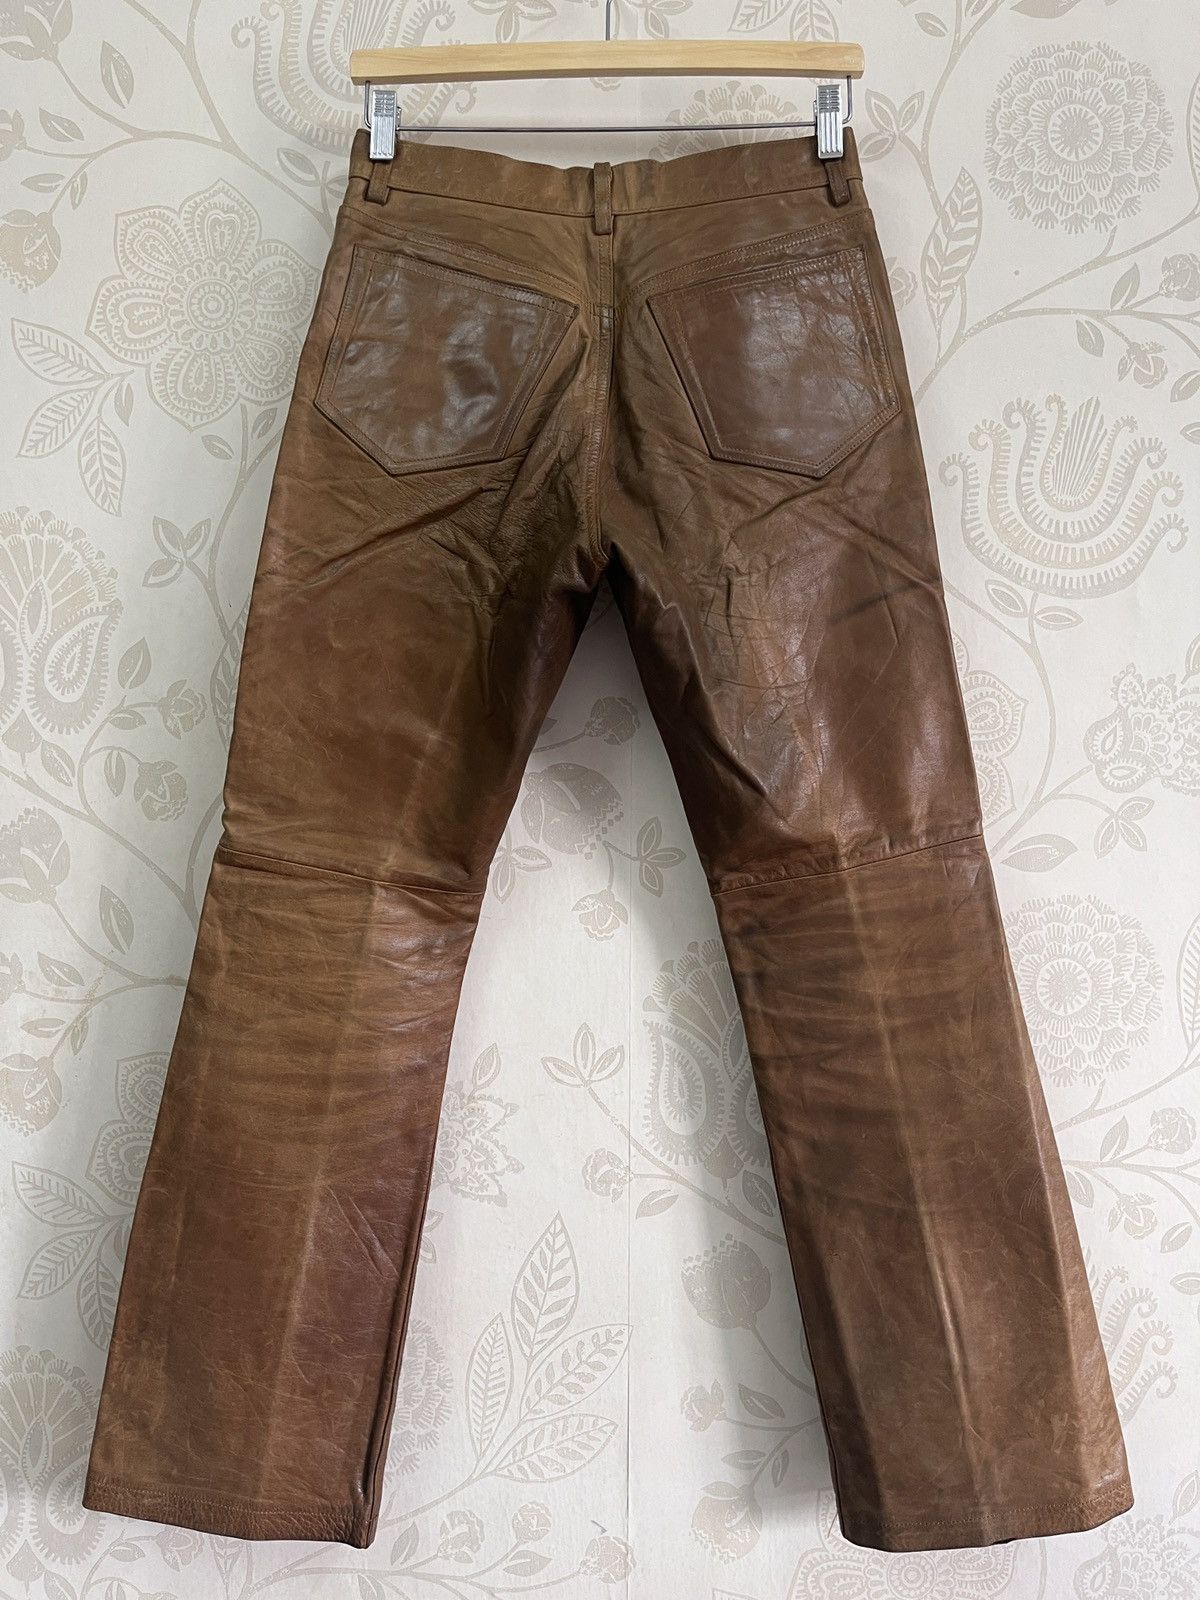 Genuine Leather - Japan 5351 Pour Les Homme Leather Pants - 23